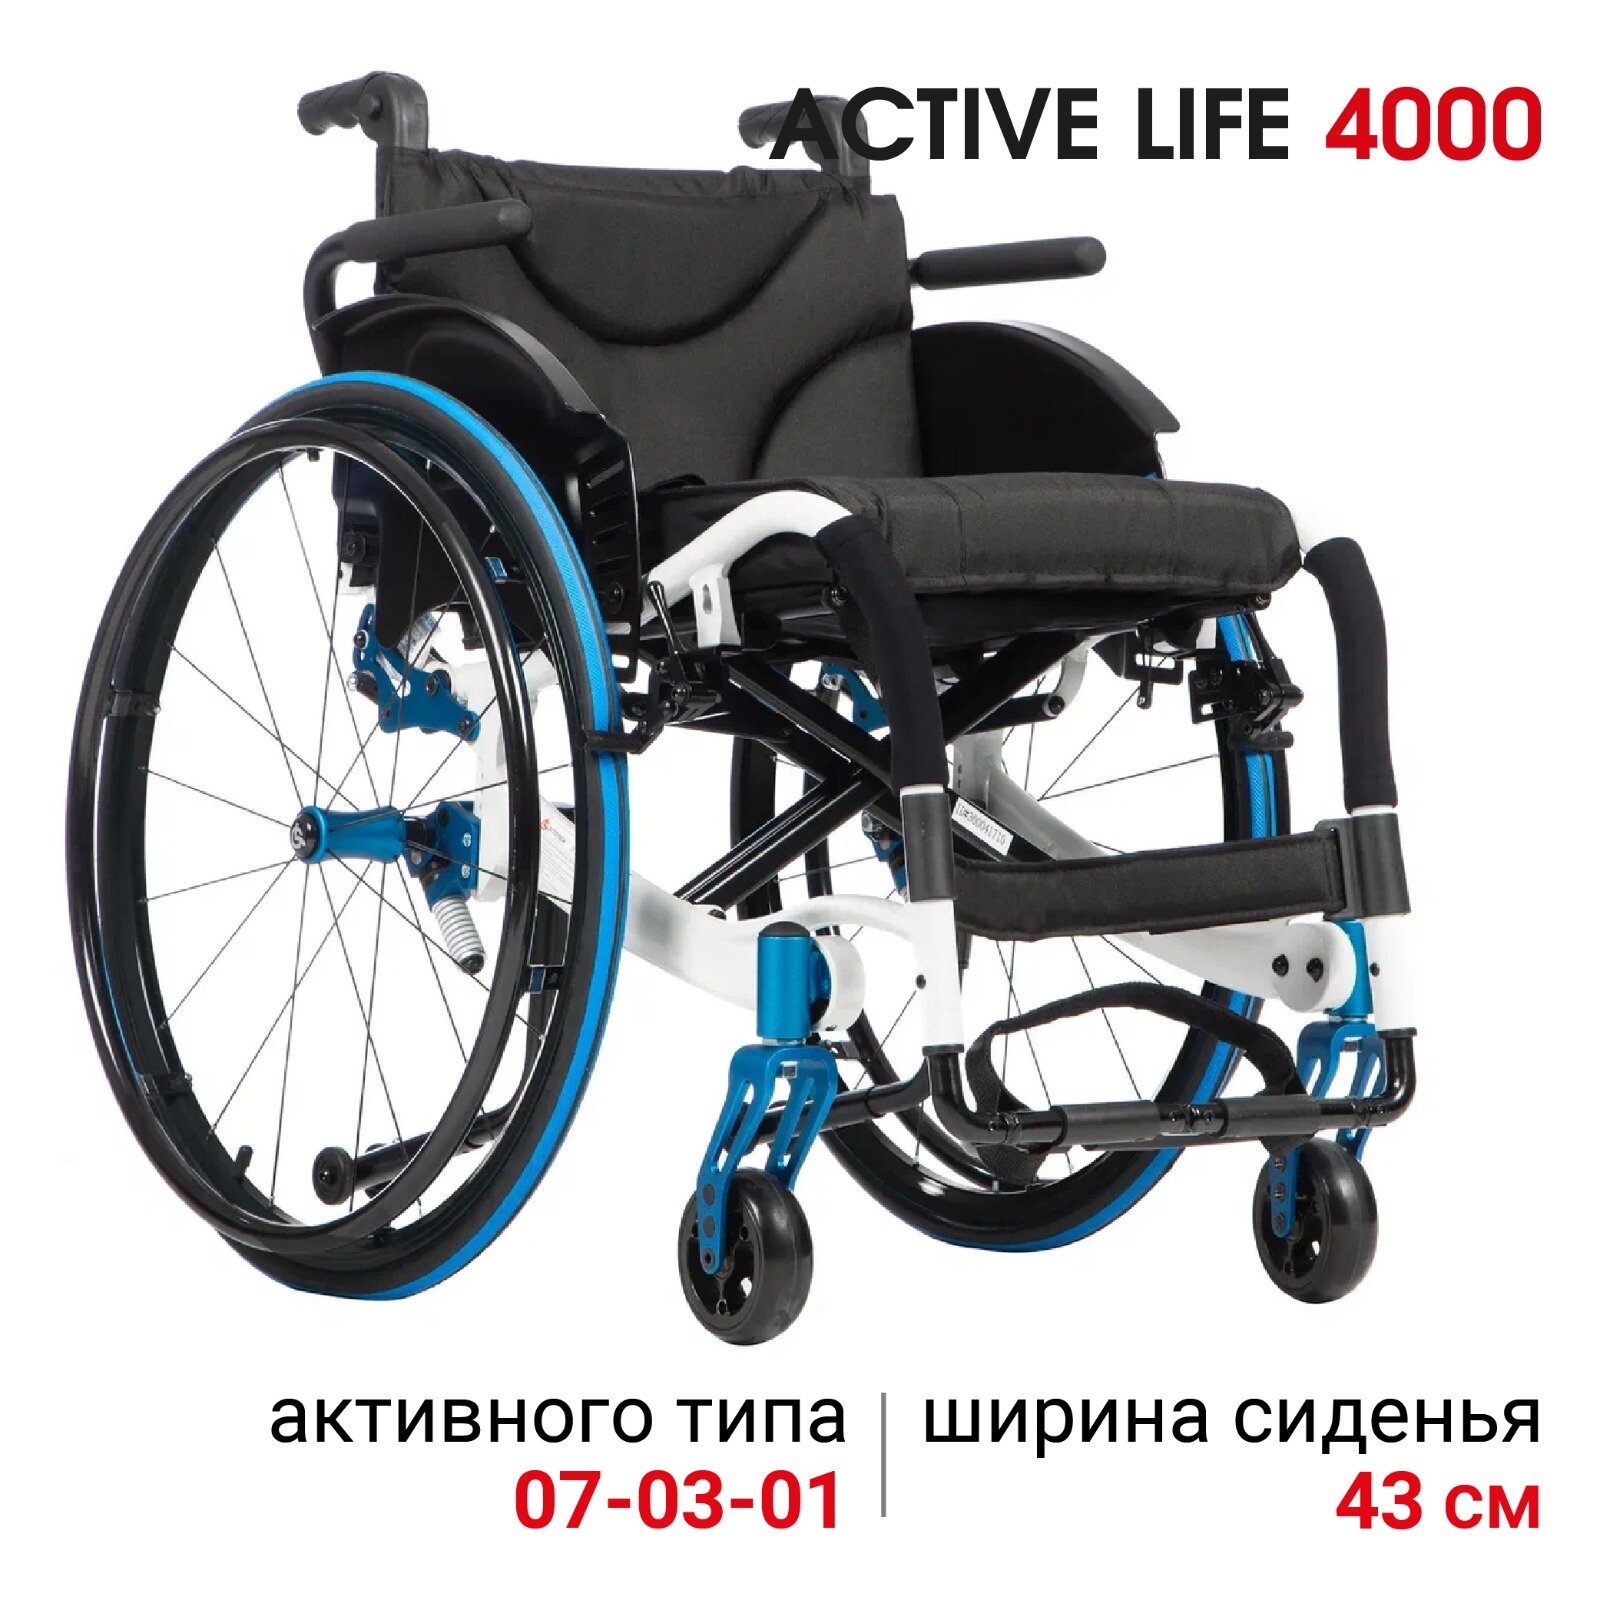 Активное кресло-коляска для инвалидов Ortonica S 4000/Active Life 4000 46PU RR складное легкое ширина сиденья 46 см литые/пневматические шины RightRun Код 07-03-01